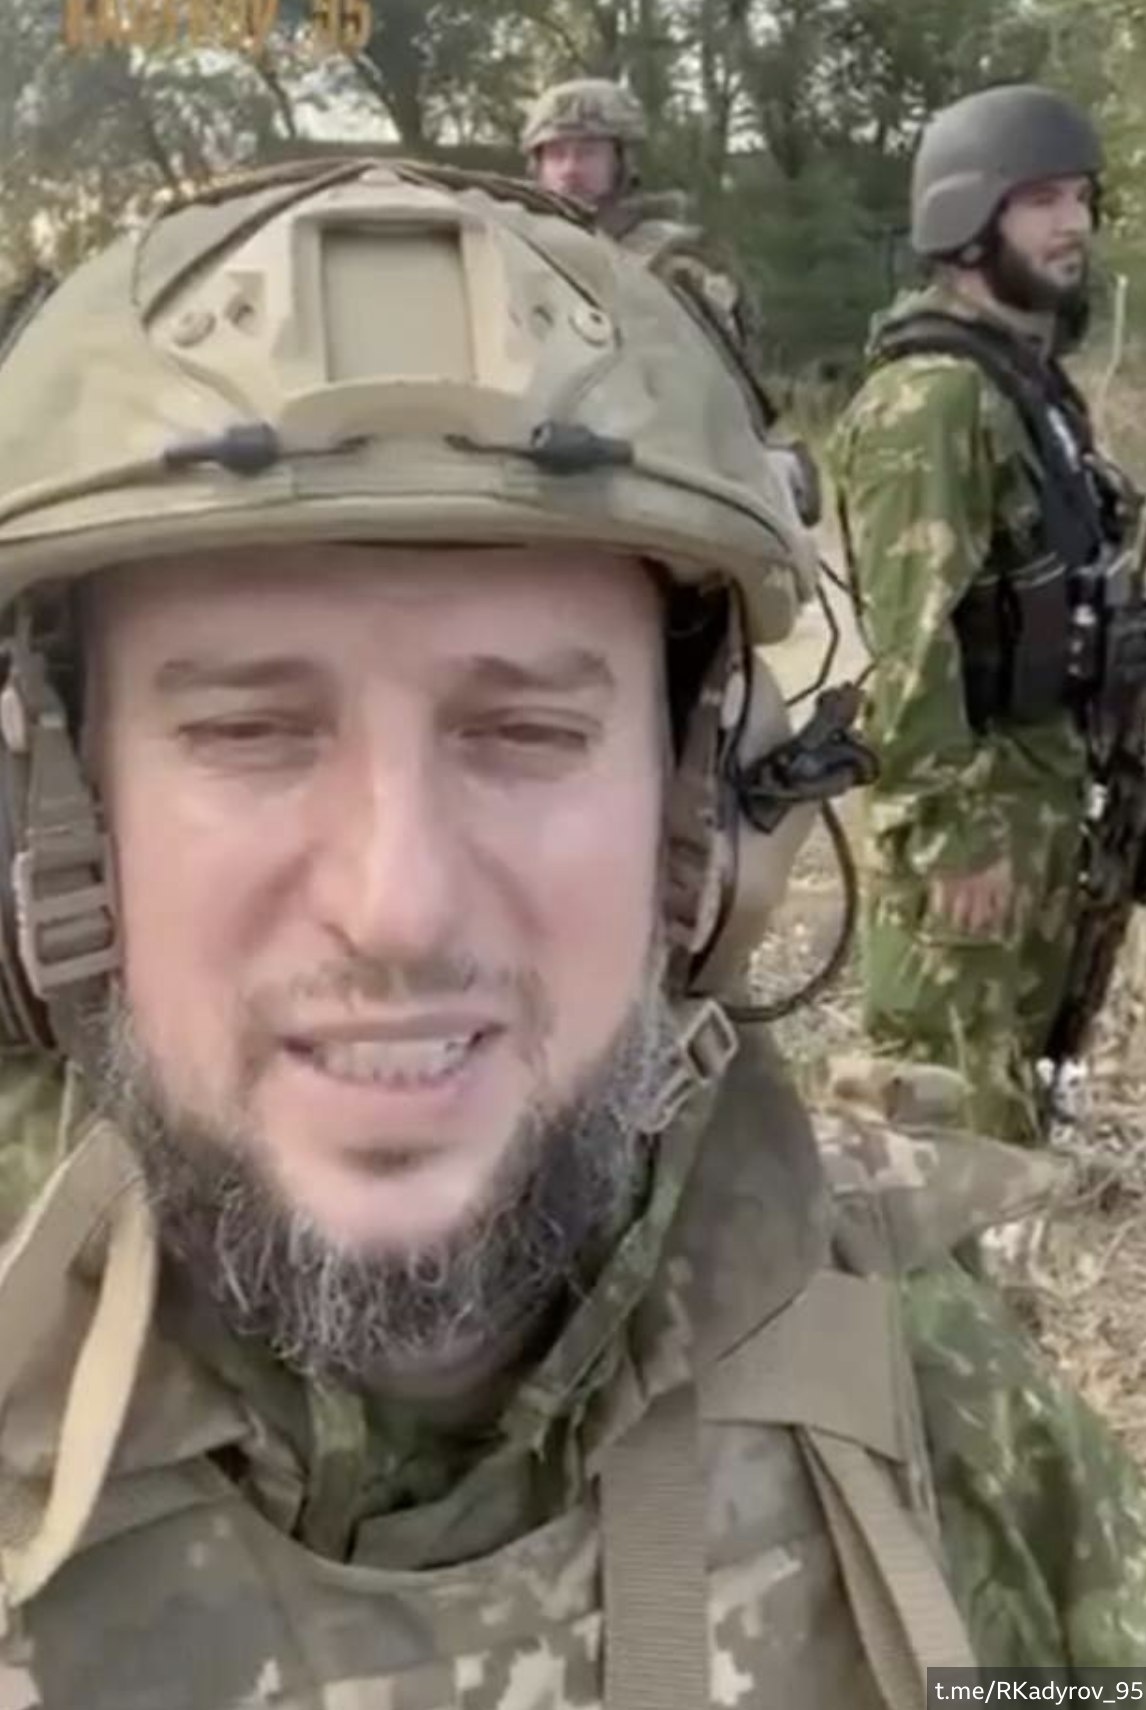 Апти Алаудінов в українському бронежилеті. Фото: скріншот із відео